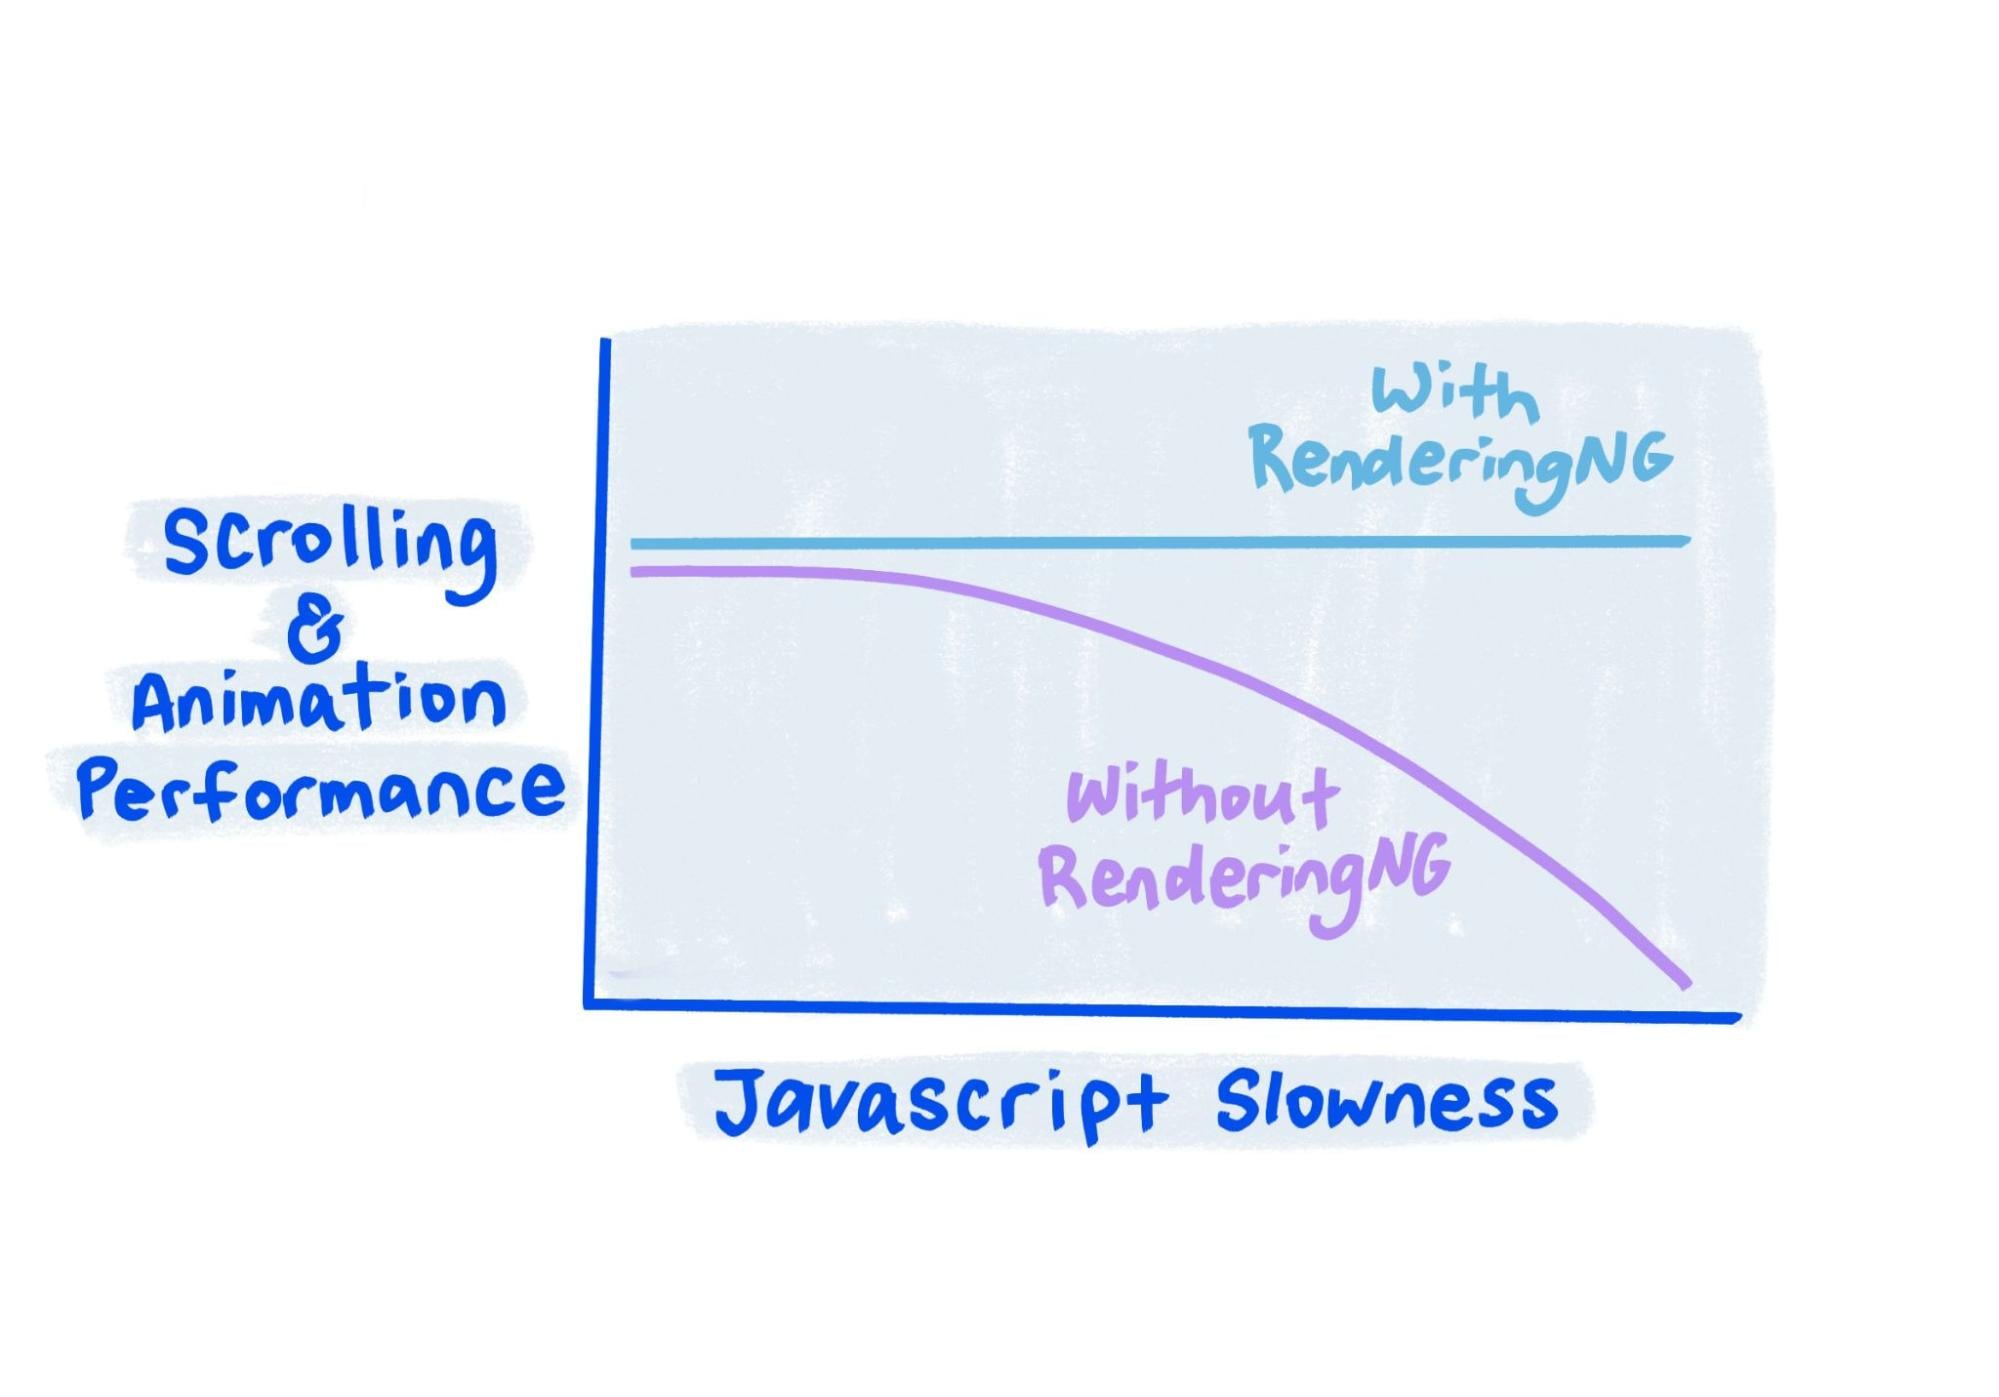 スケッチから、JavaScript が非常に遅い場合でも、RenderingNG を使用するとパフォーマンスが維持されることがわかります。